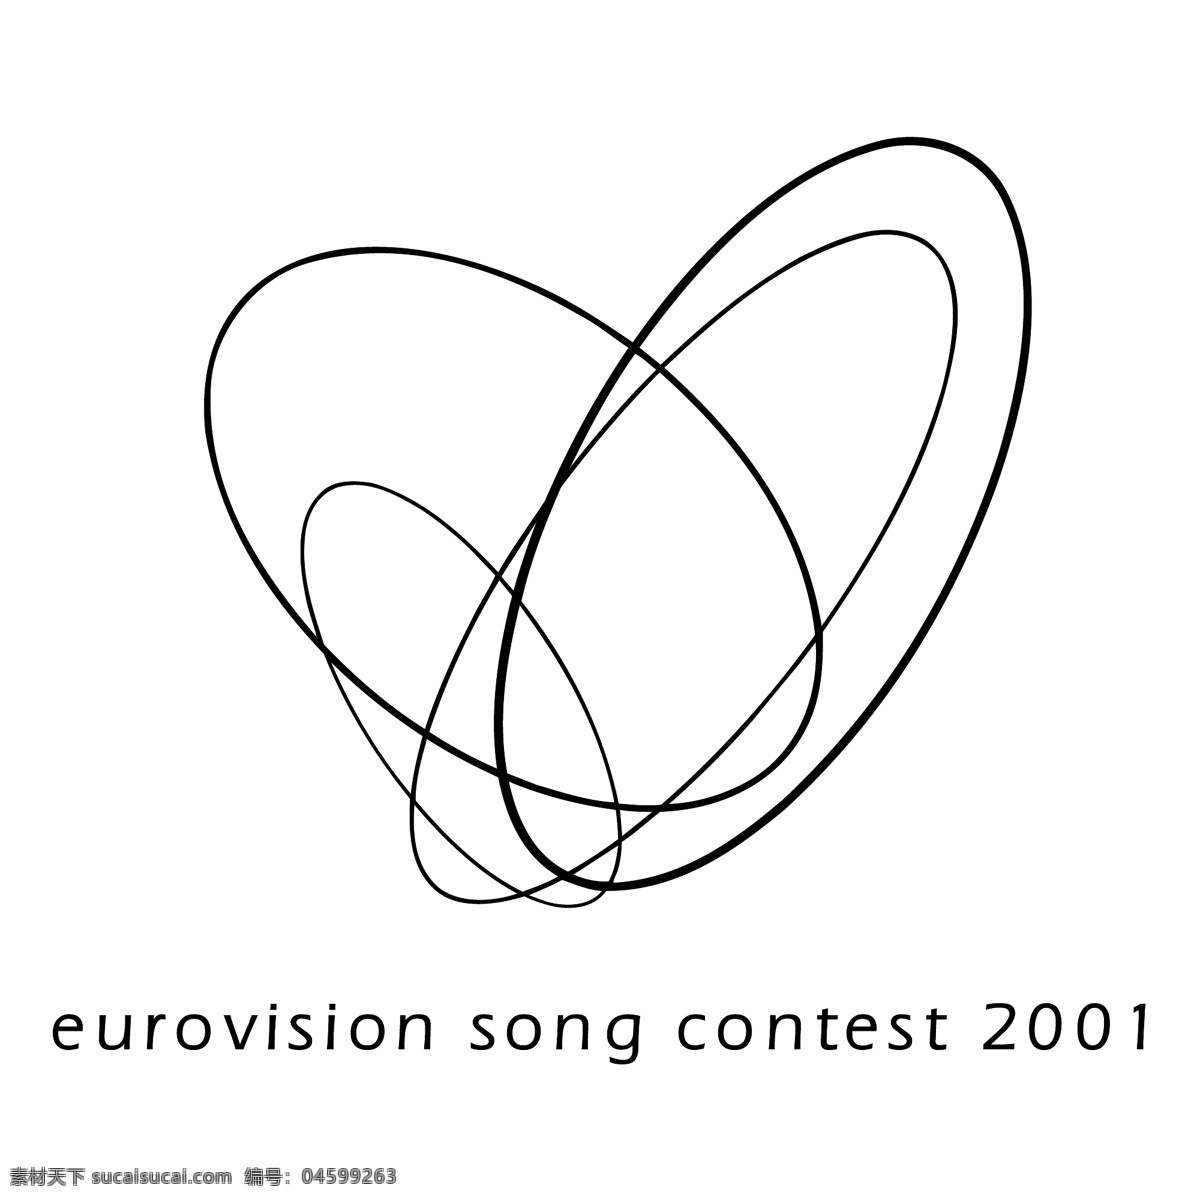 欧洲 电视 歌曲 大赛 2001 歌唱比赛 歌唱大赛 竞赛 欧洲电视歌曲 载体 歌唱 大赛2004 1998 2000 矢量欧洲歌唱 矢量图 建筑家居